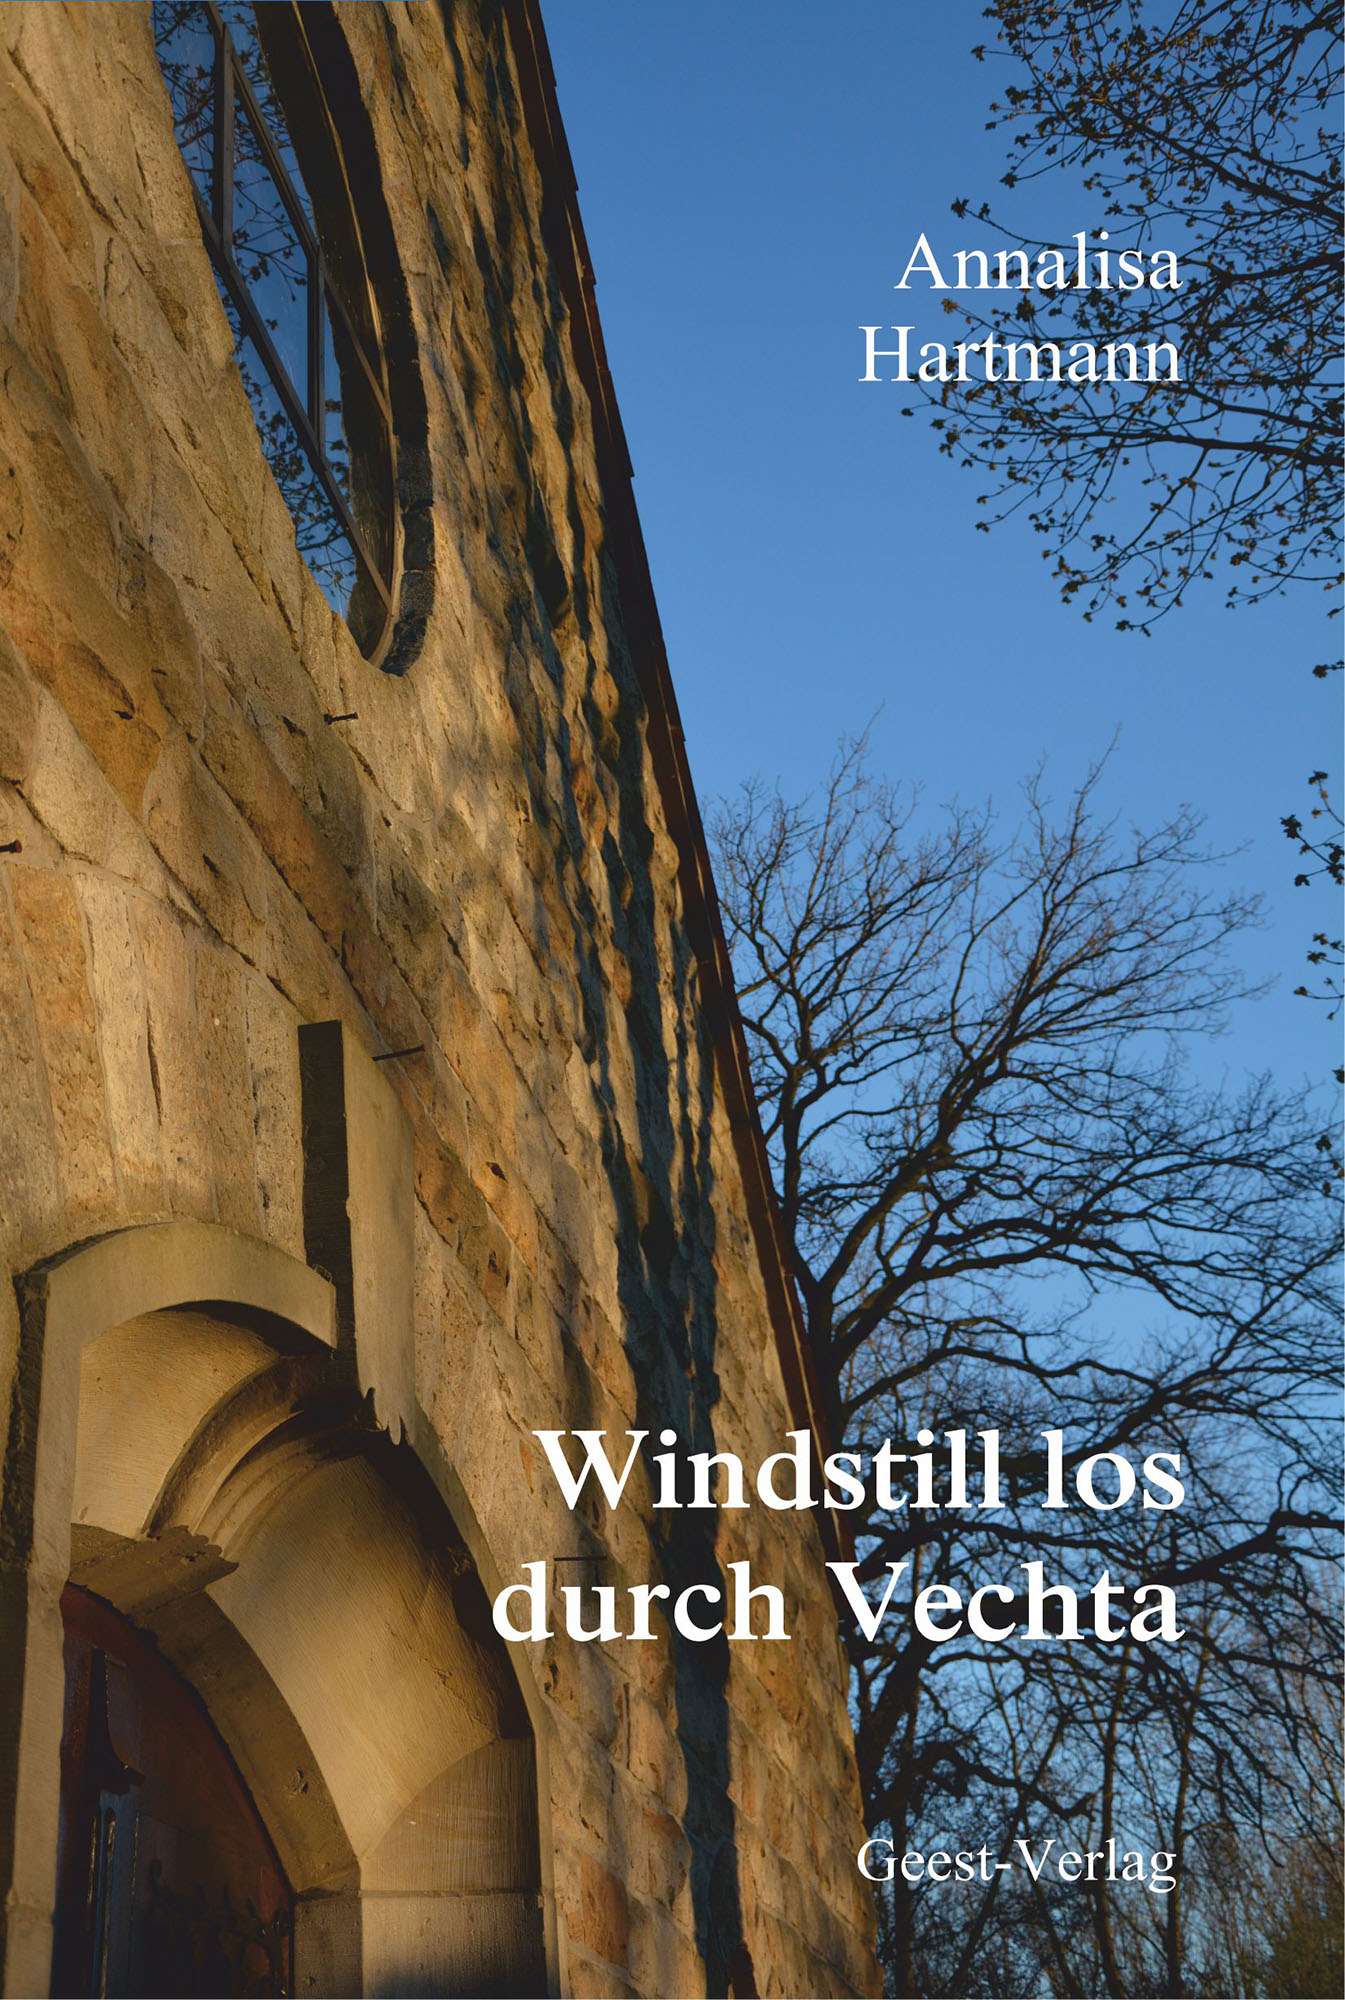 Windstill Durch Vechta Cover Annalisa Hartmann Autorin